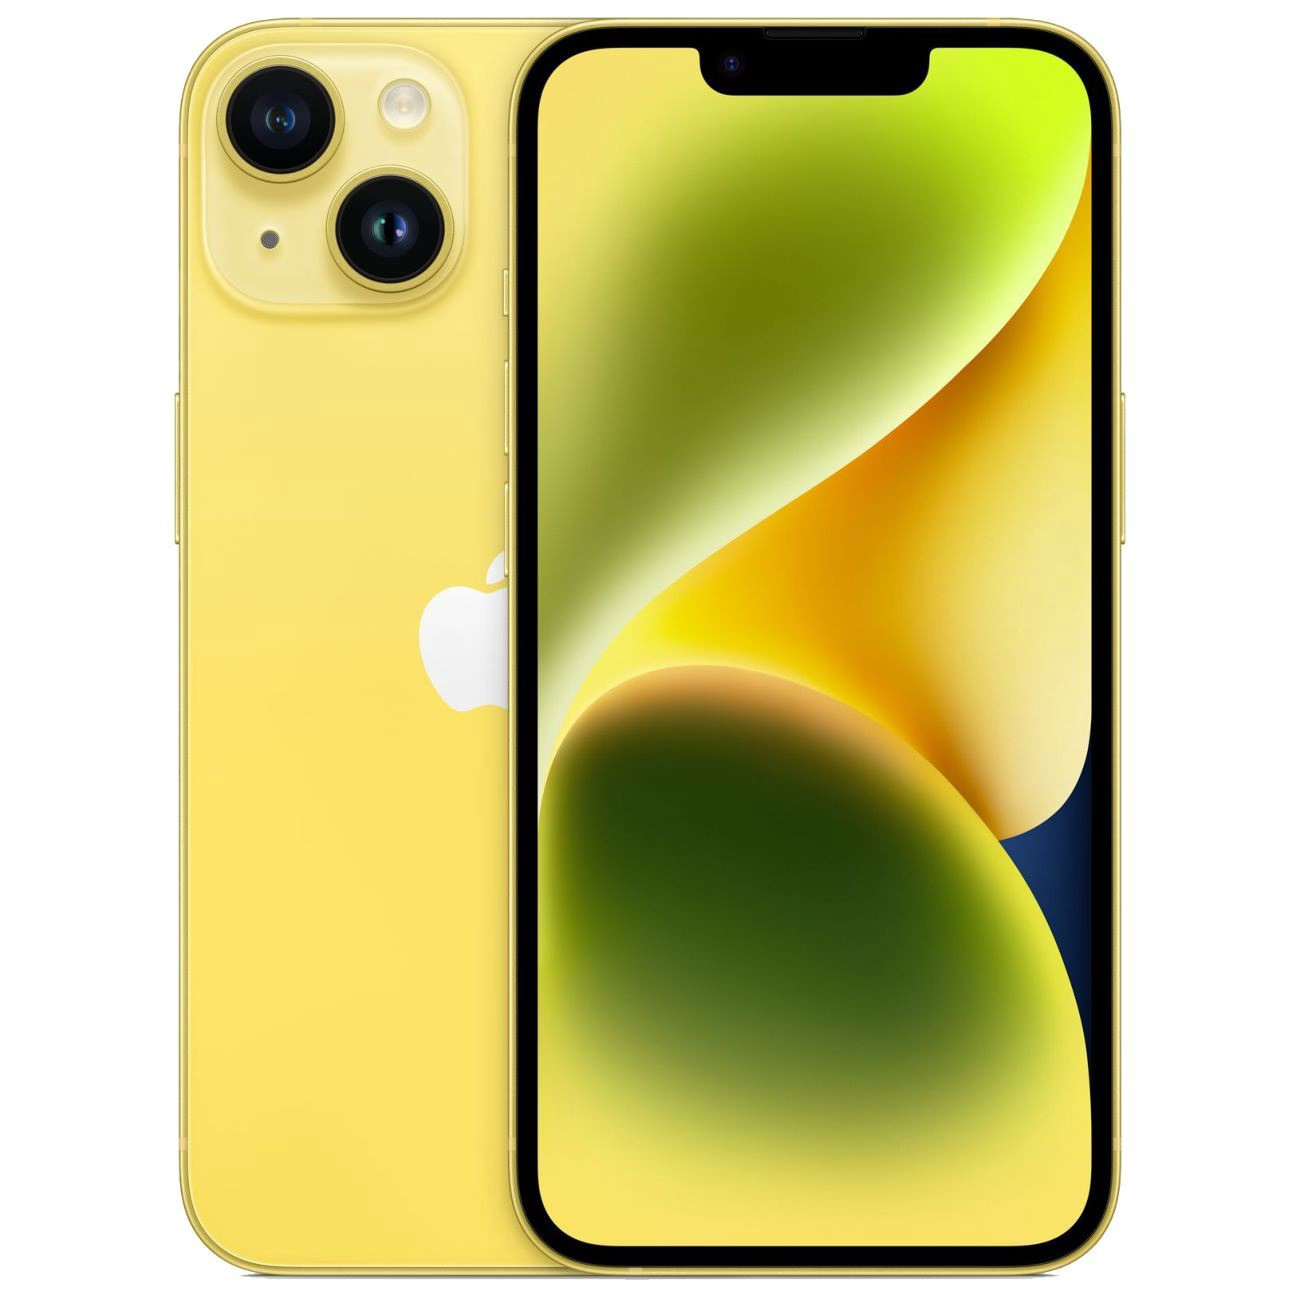 Купить смартфон apple iphone 14 128gb yellow Apple iPhone 14 в официальном магазине Apple, Samsung, Xiaomi. iPixel.ru Купить, заказ, кредит, рассрочка, отзывы,  характеристики, цена,  фотографии, в подарок.